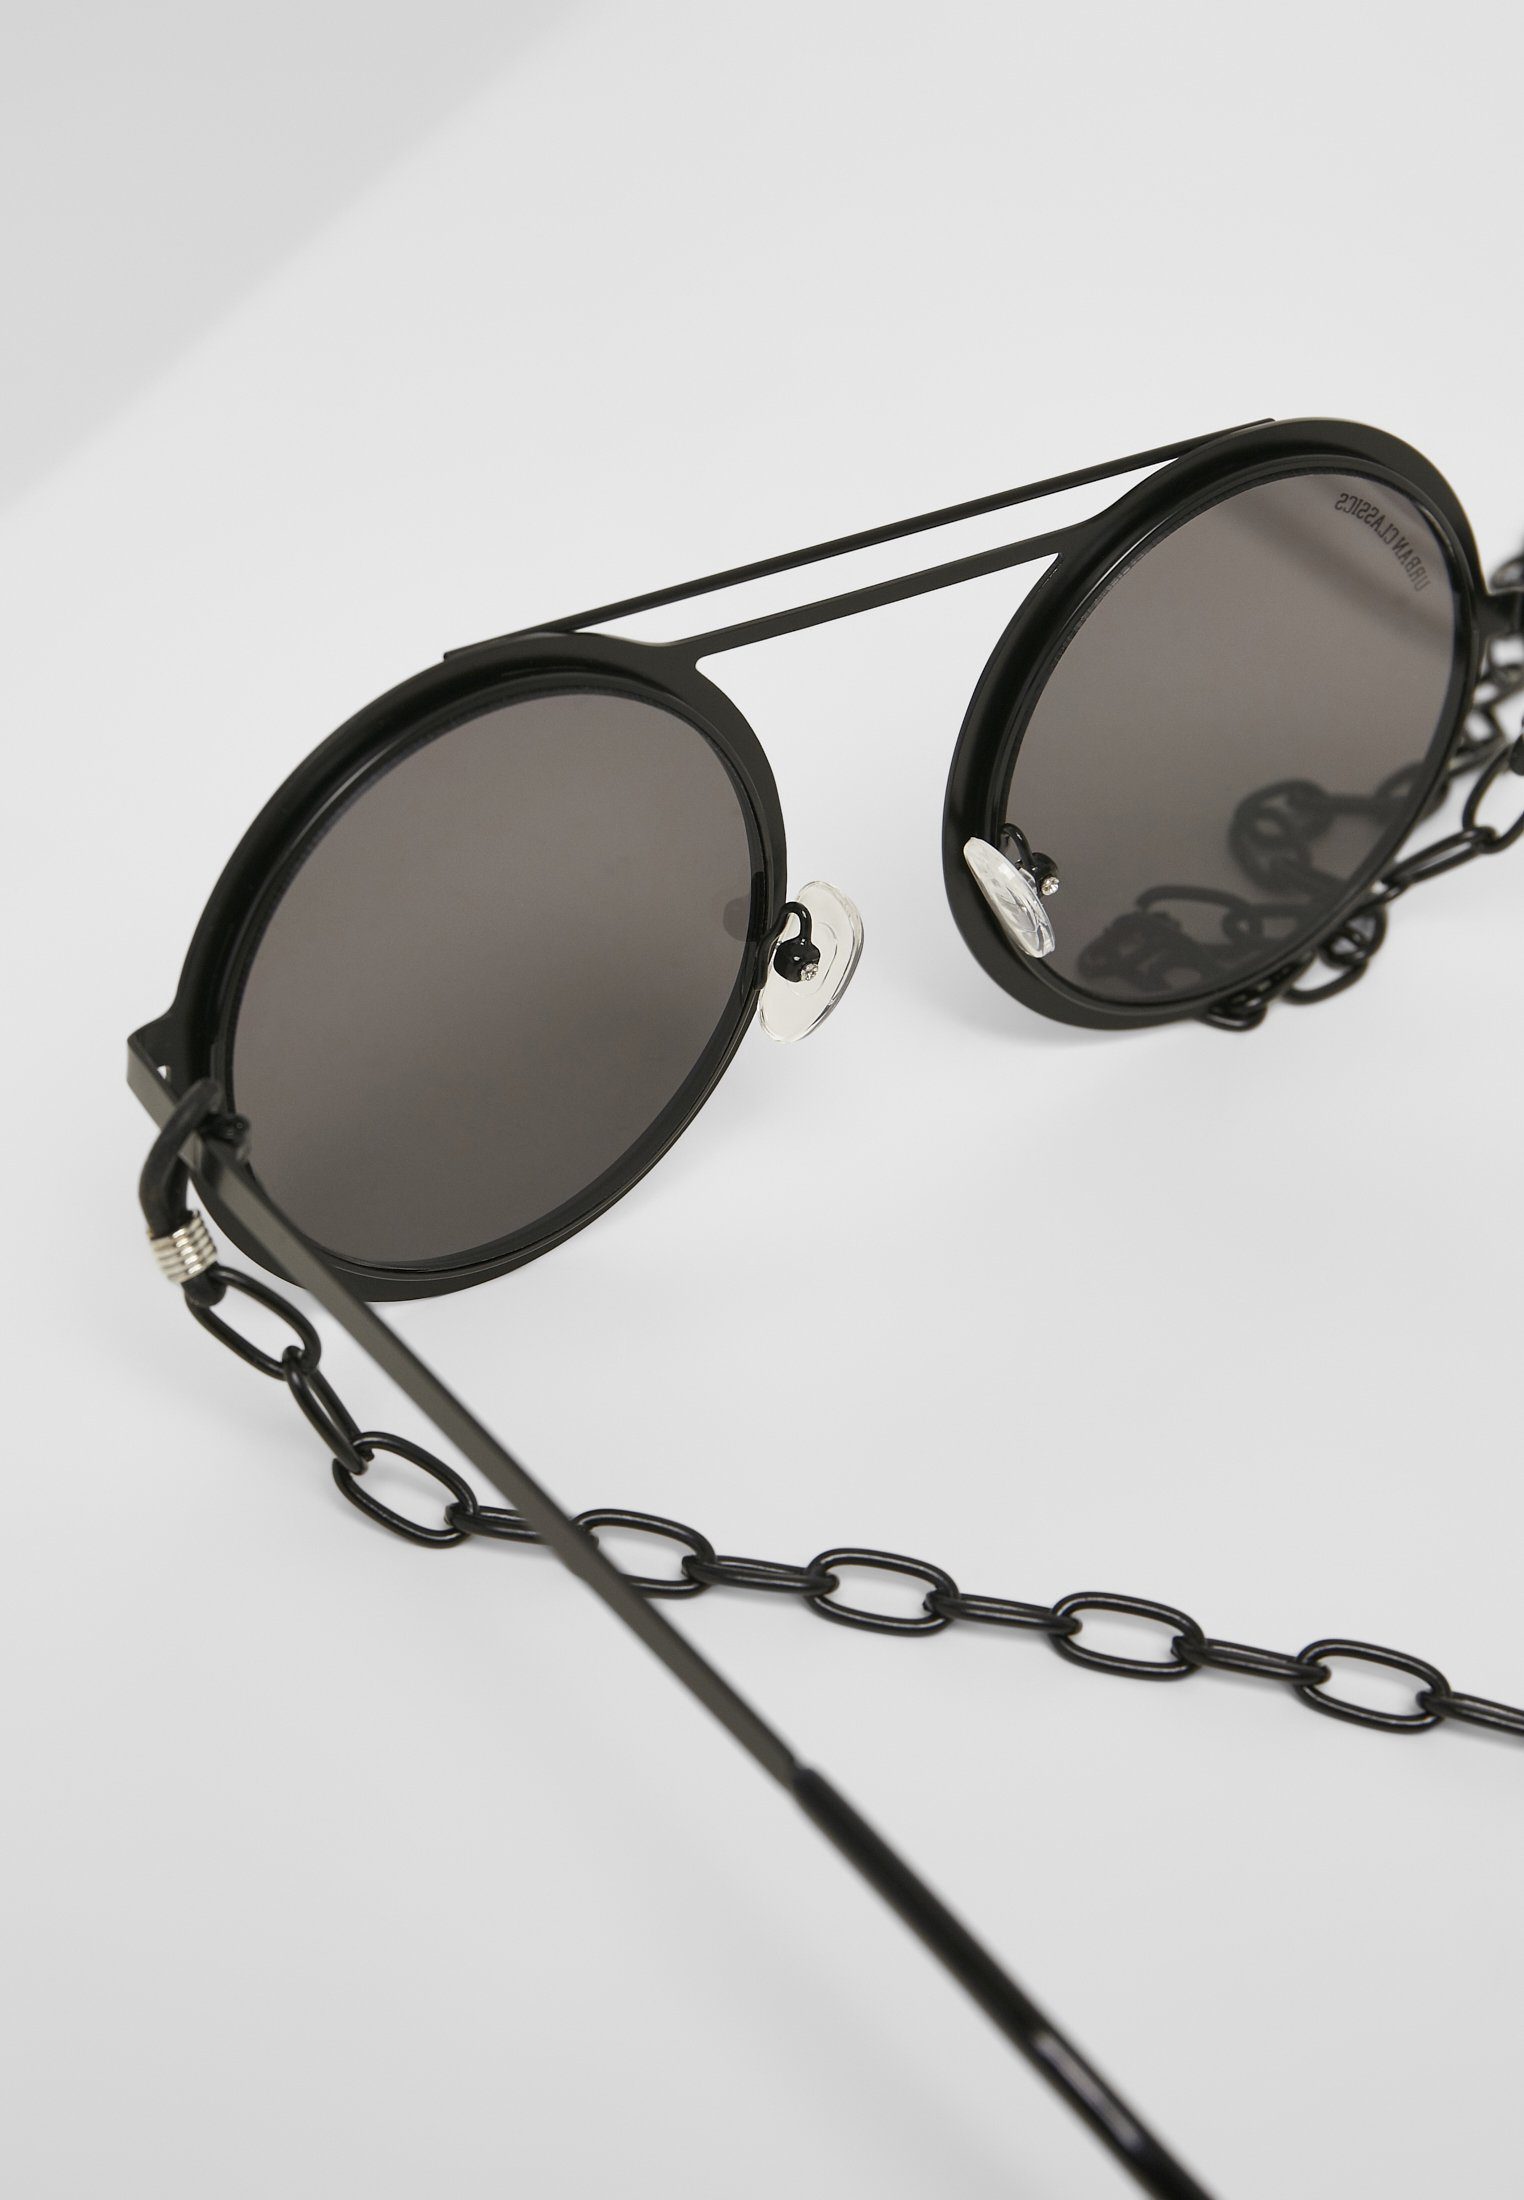 Chain Sunglasses mirror/black CLASSICS Sonnenbrille silver URBAN 104 Unisex